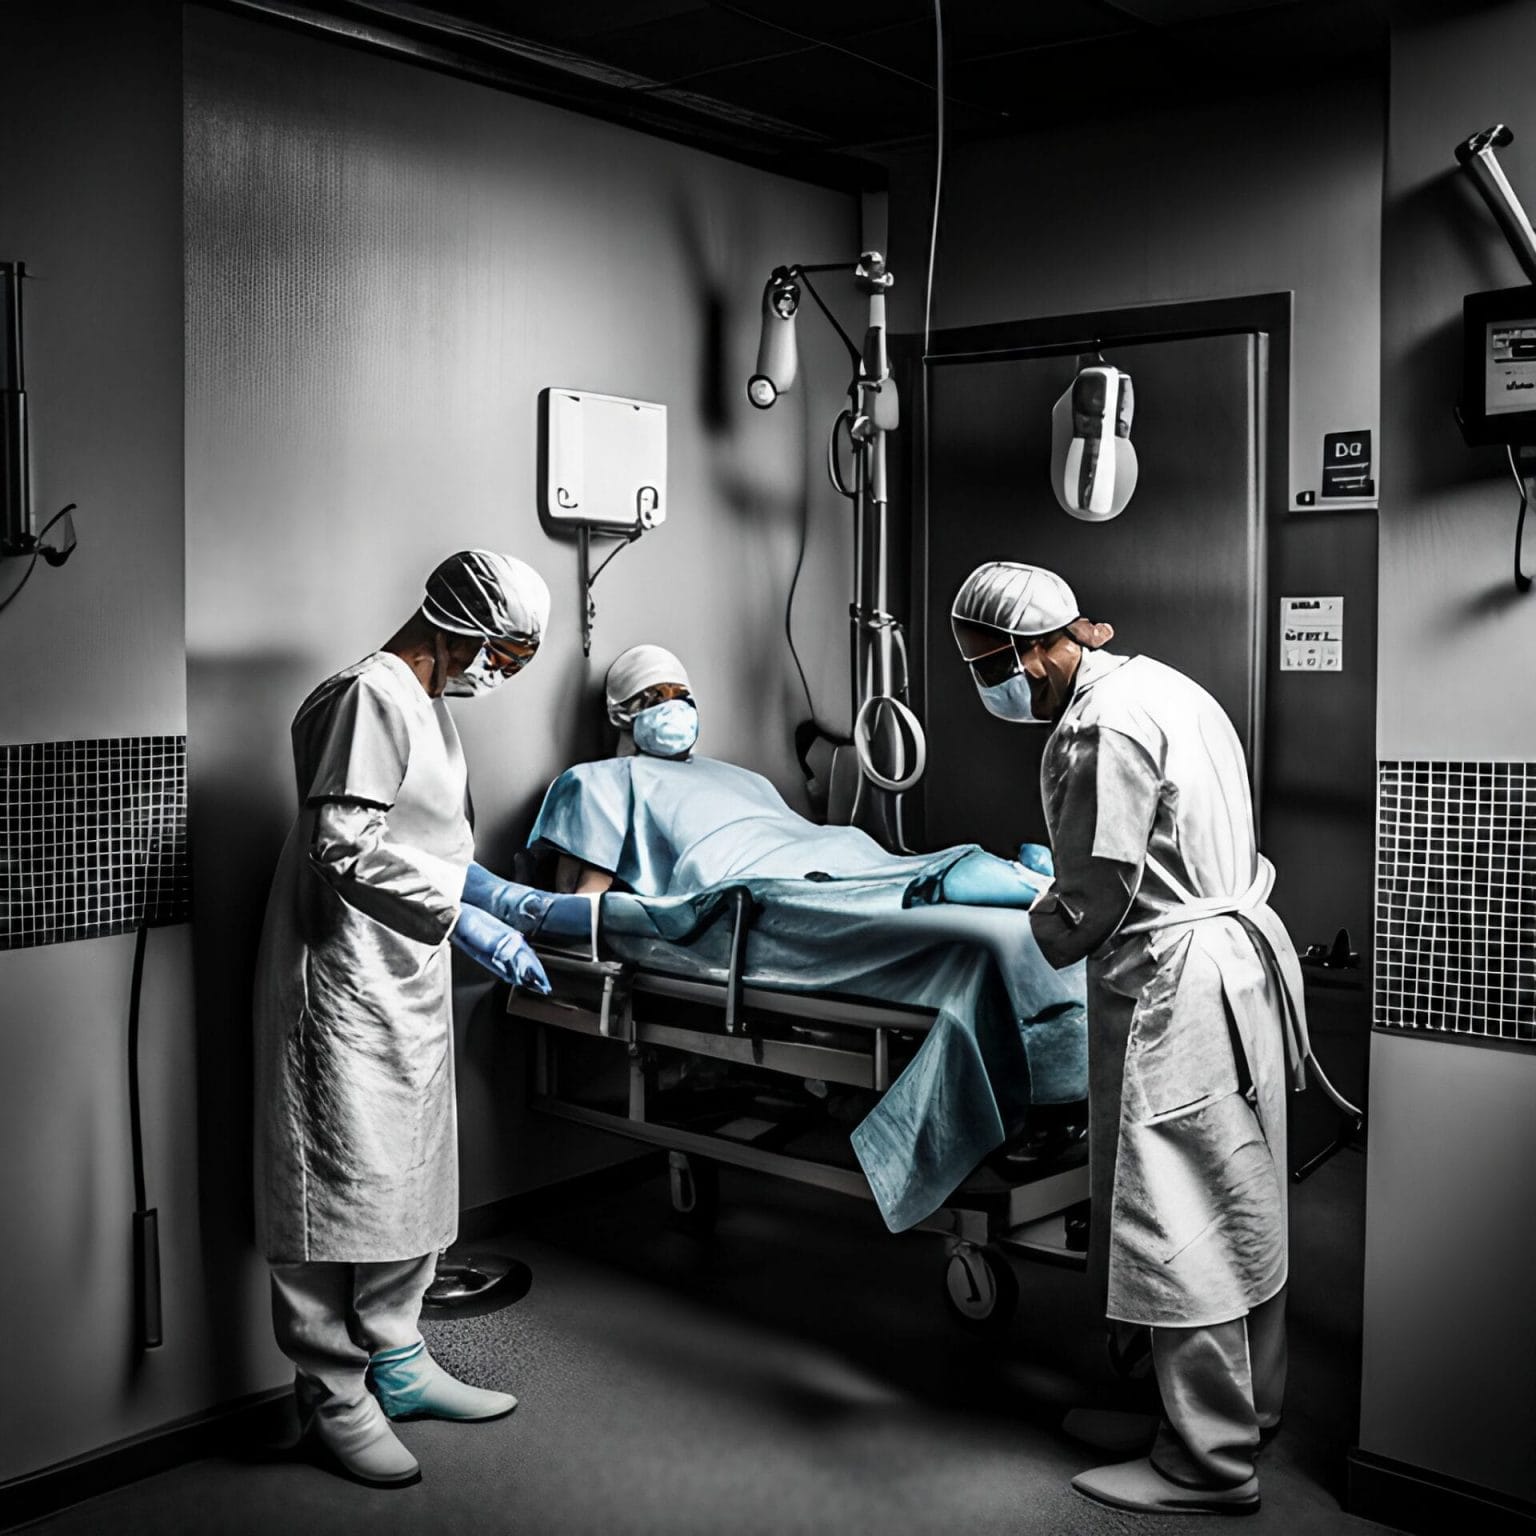 파올로 마키아리니: 논란의 외과의사